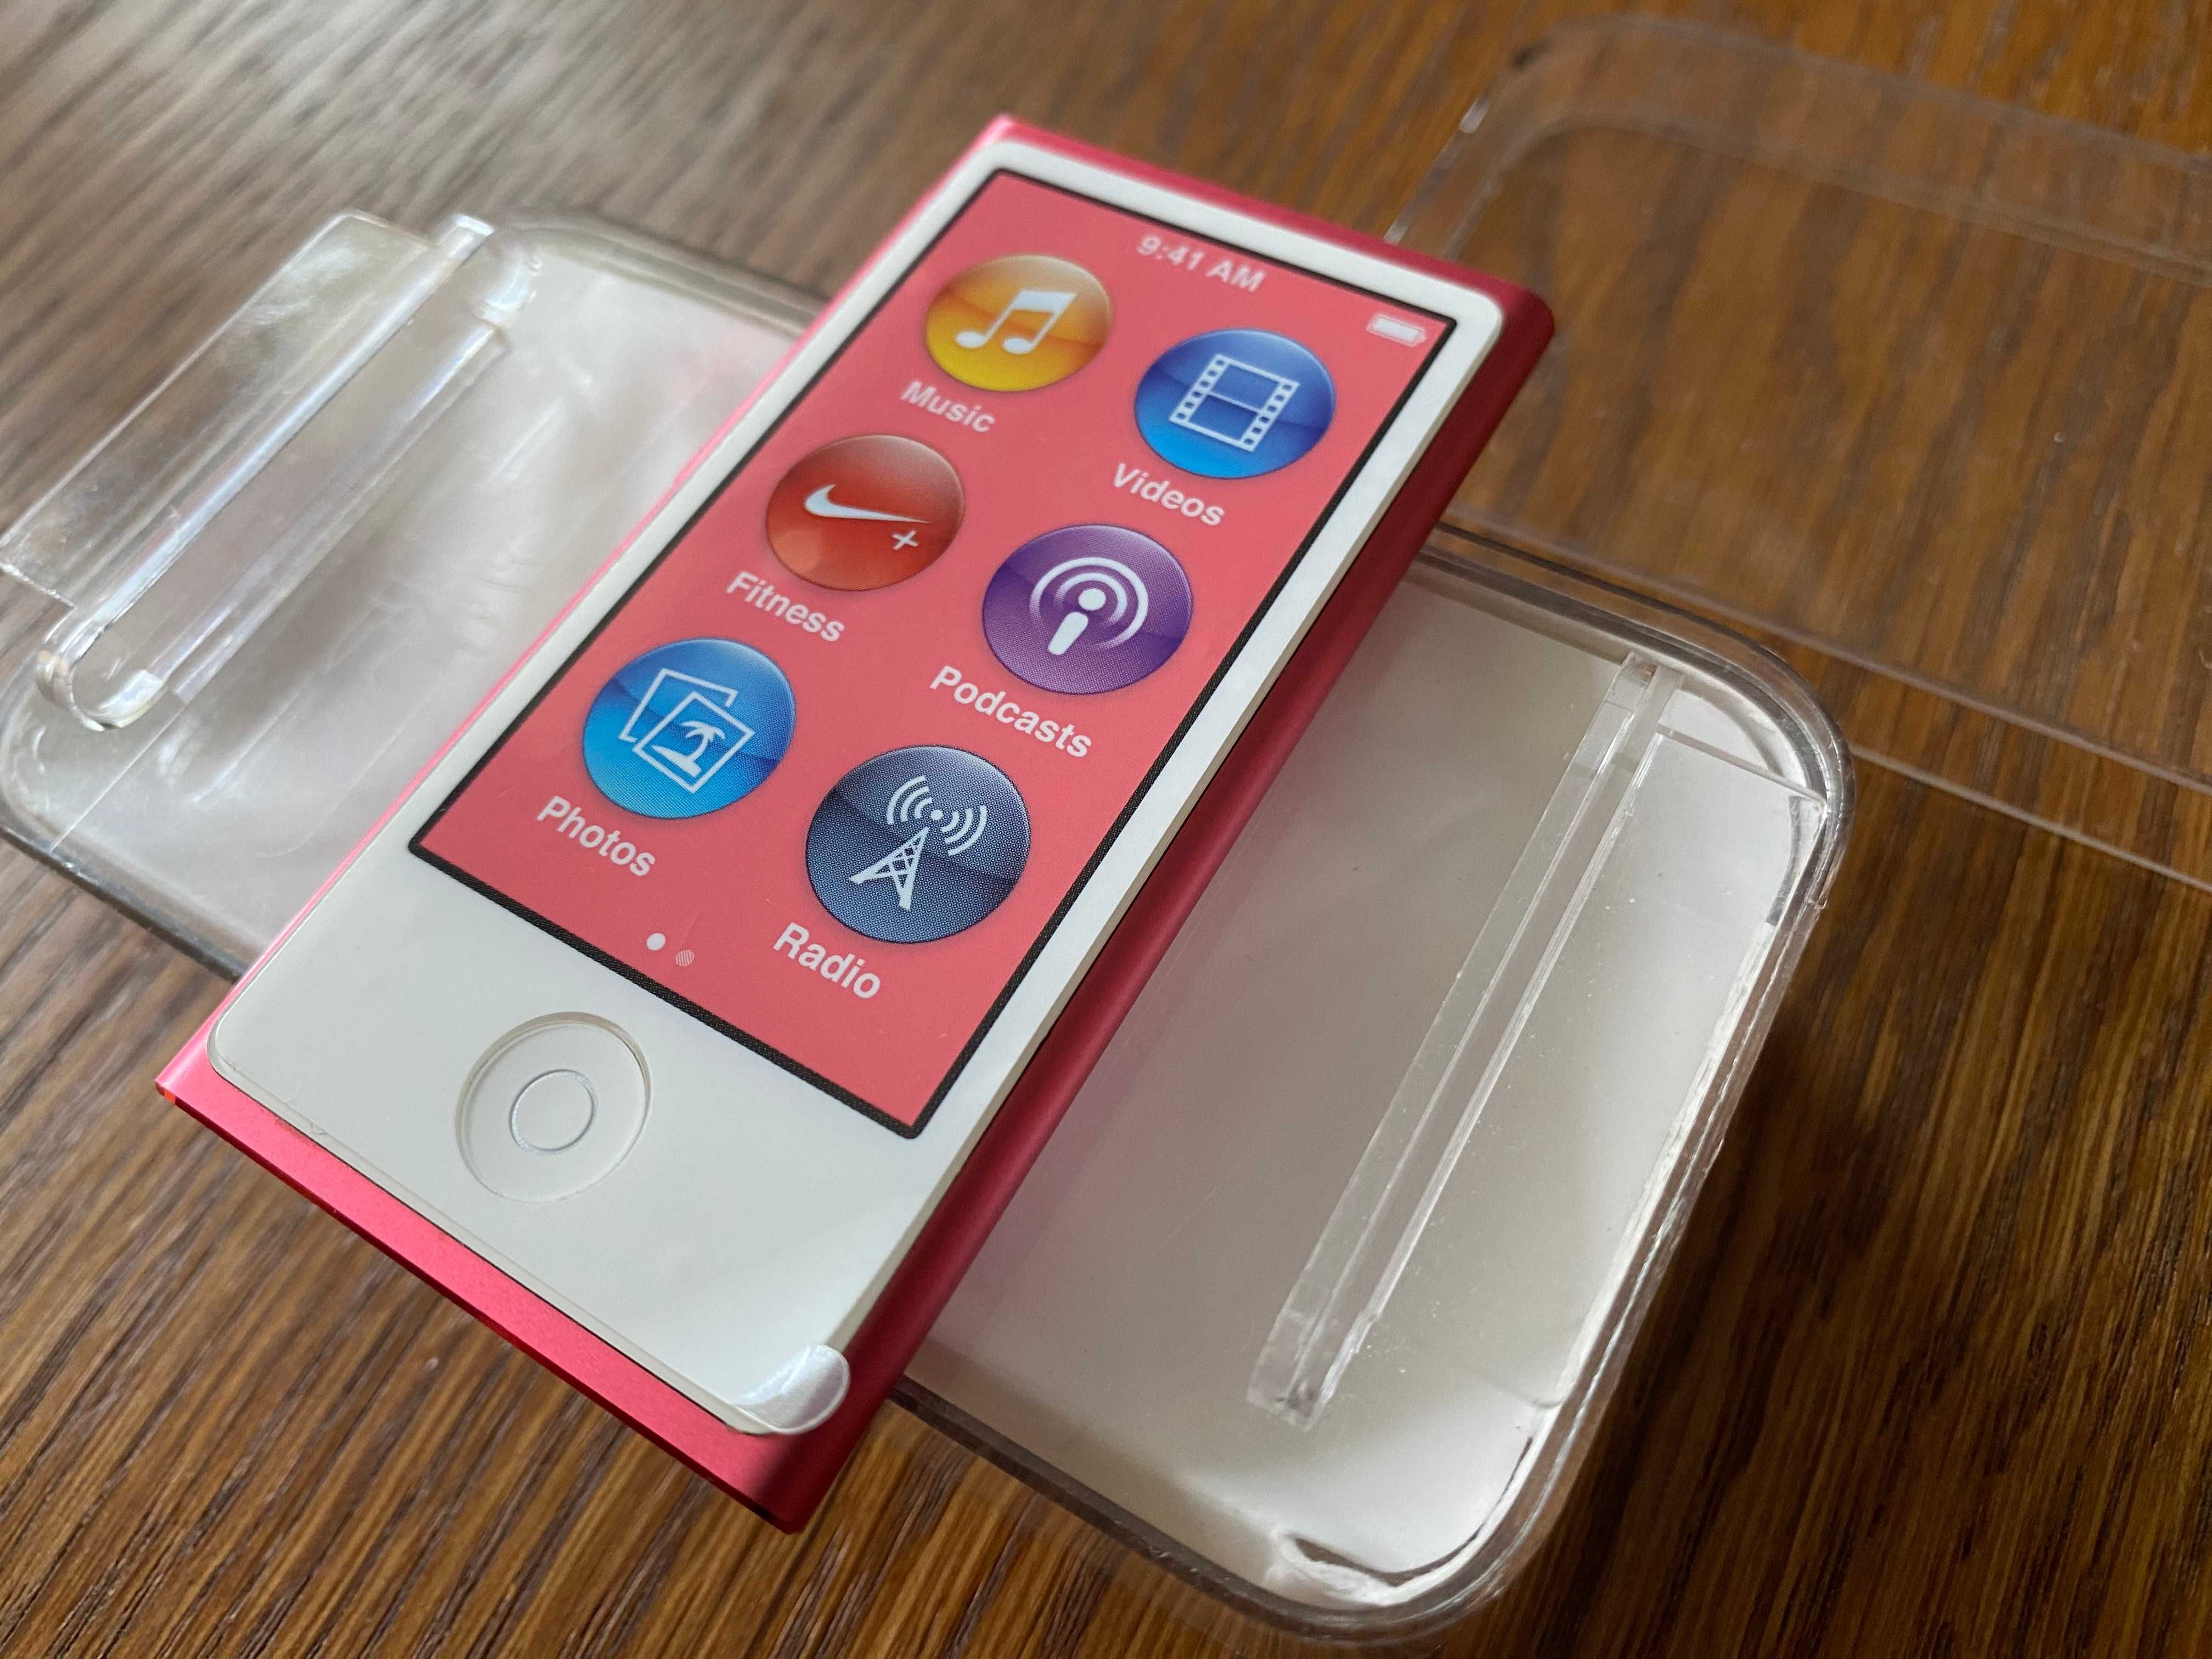 Apple iPod Nano 7G 16GB A1446 MD475LL/A Różowy Pink